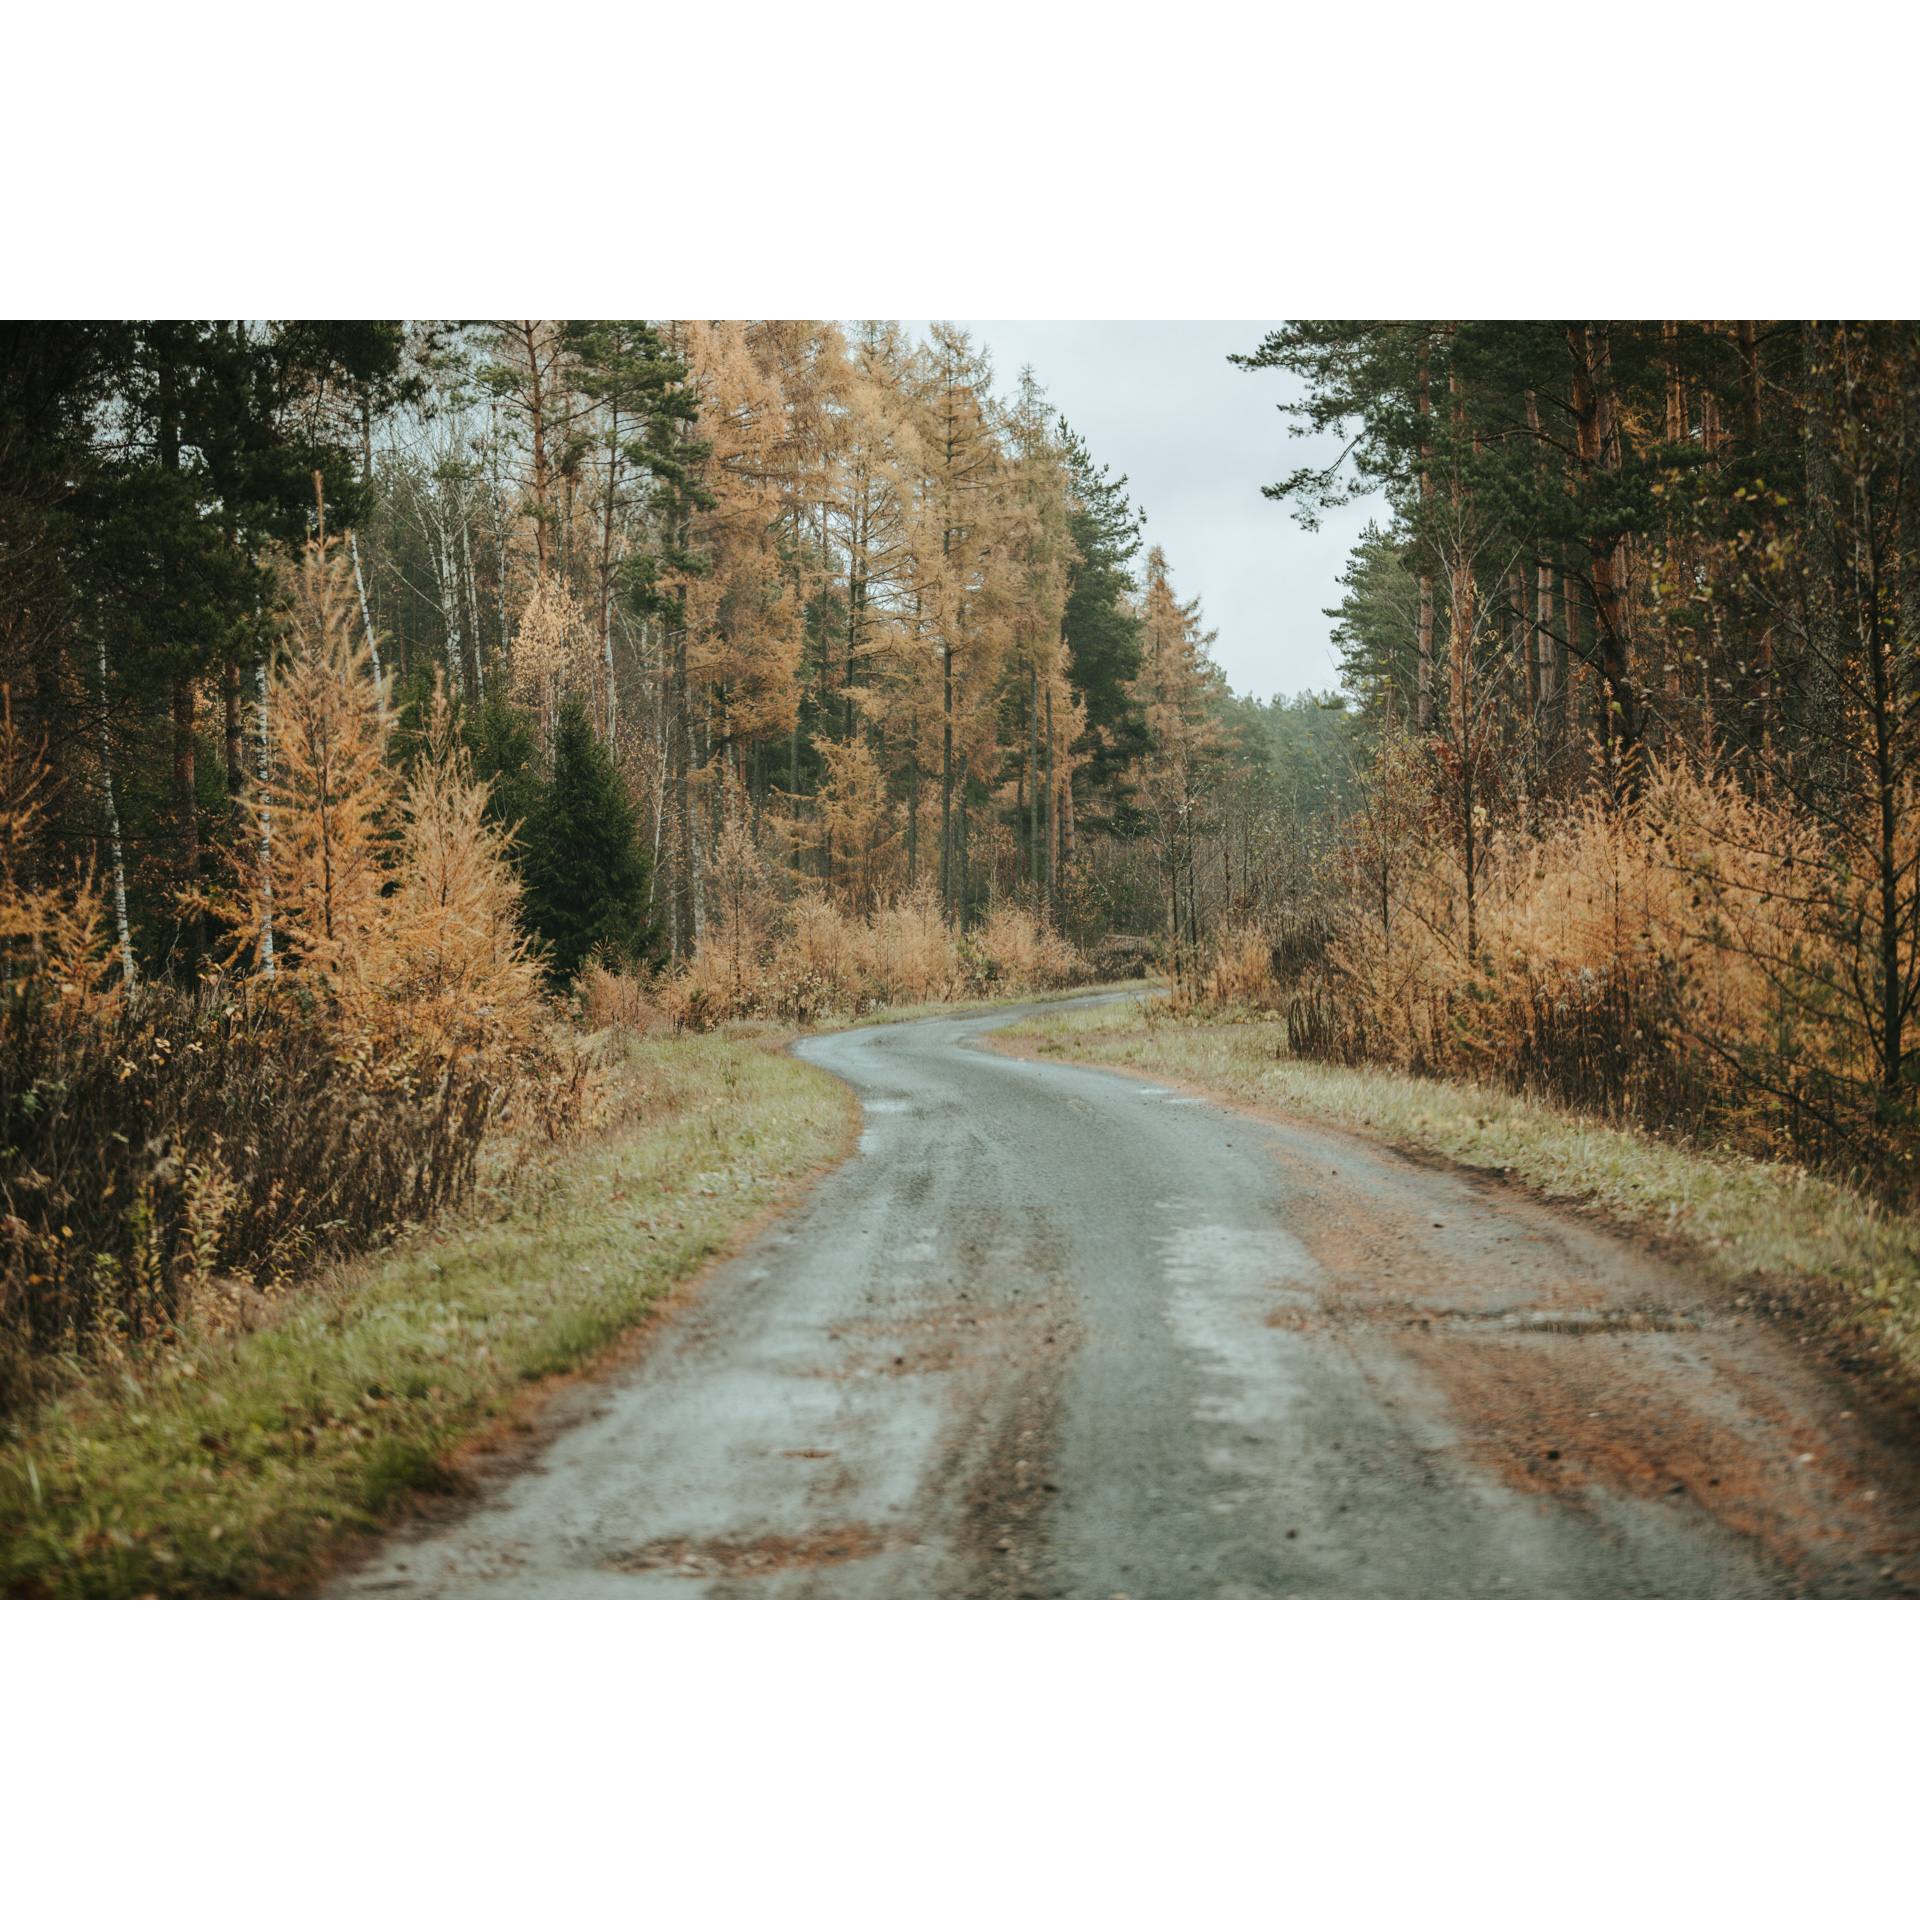 Piaszczysta droga prowadząca przez las między rudo-brązowymi poboczami i drzewami